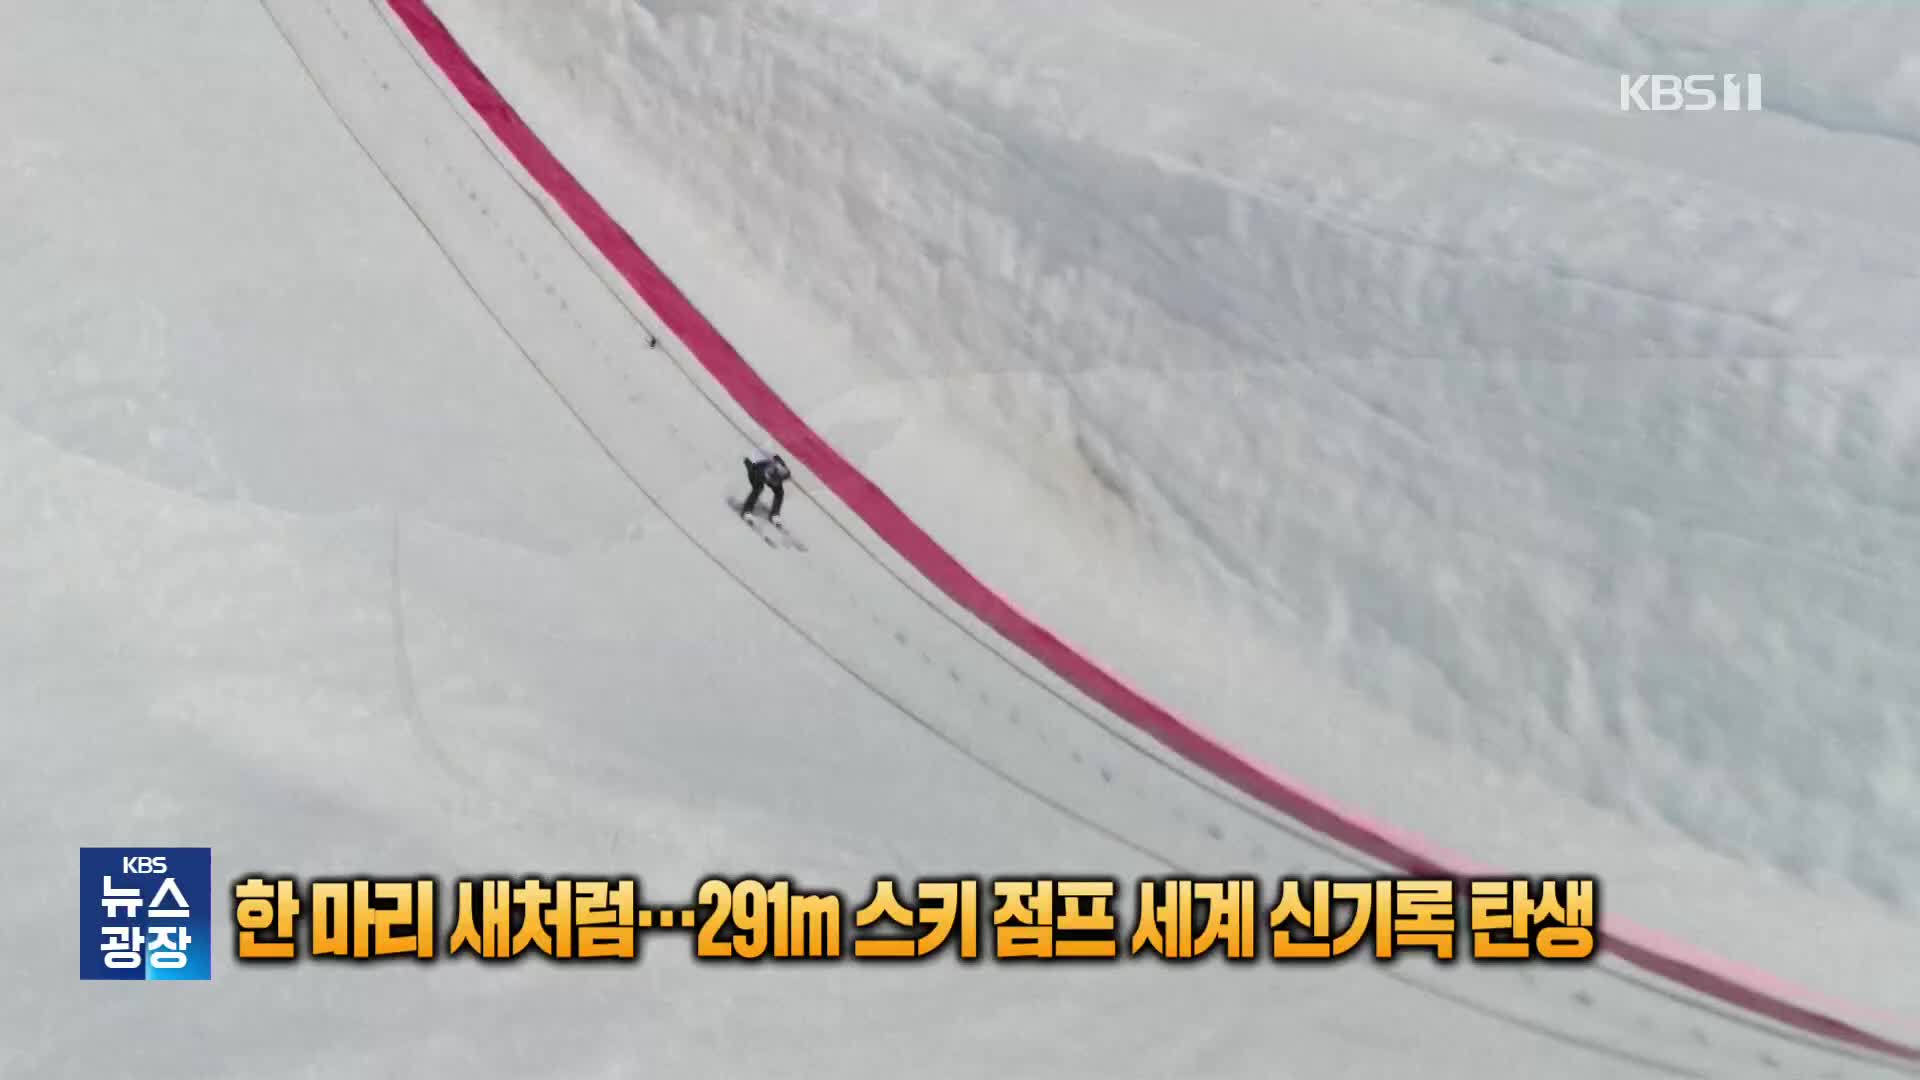 [잇슈 SNS] 한 마리의 새처럼…291m 스키 점프 세계 신기록 탄생